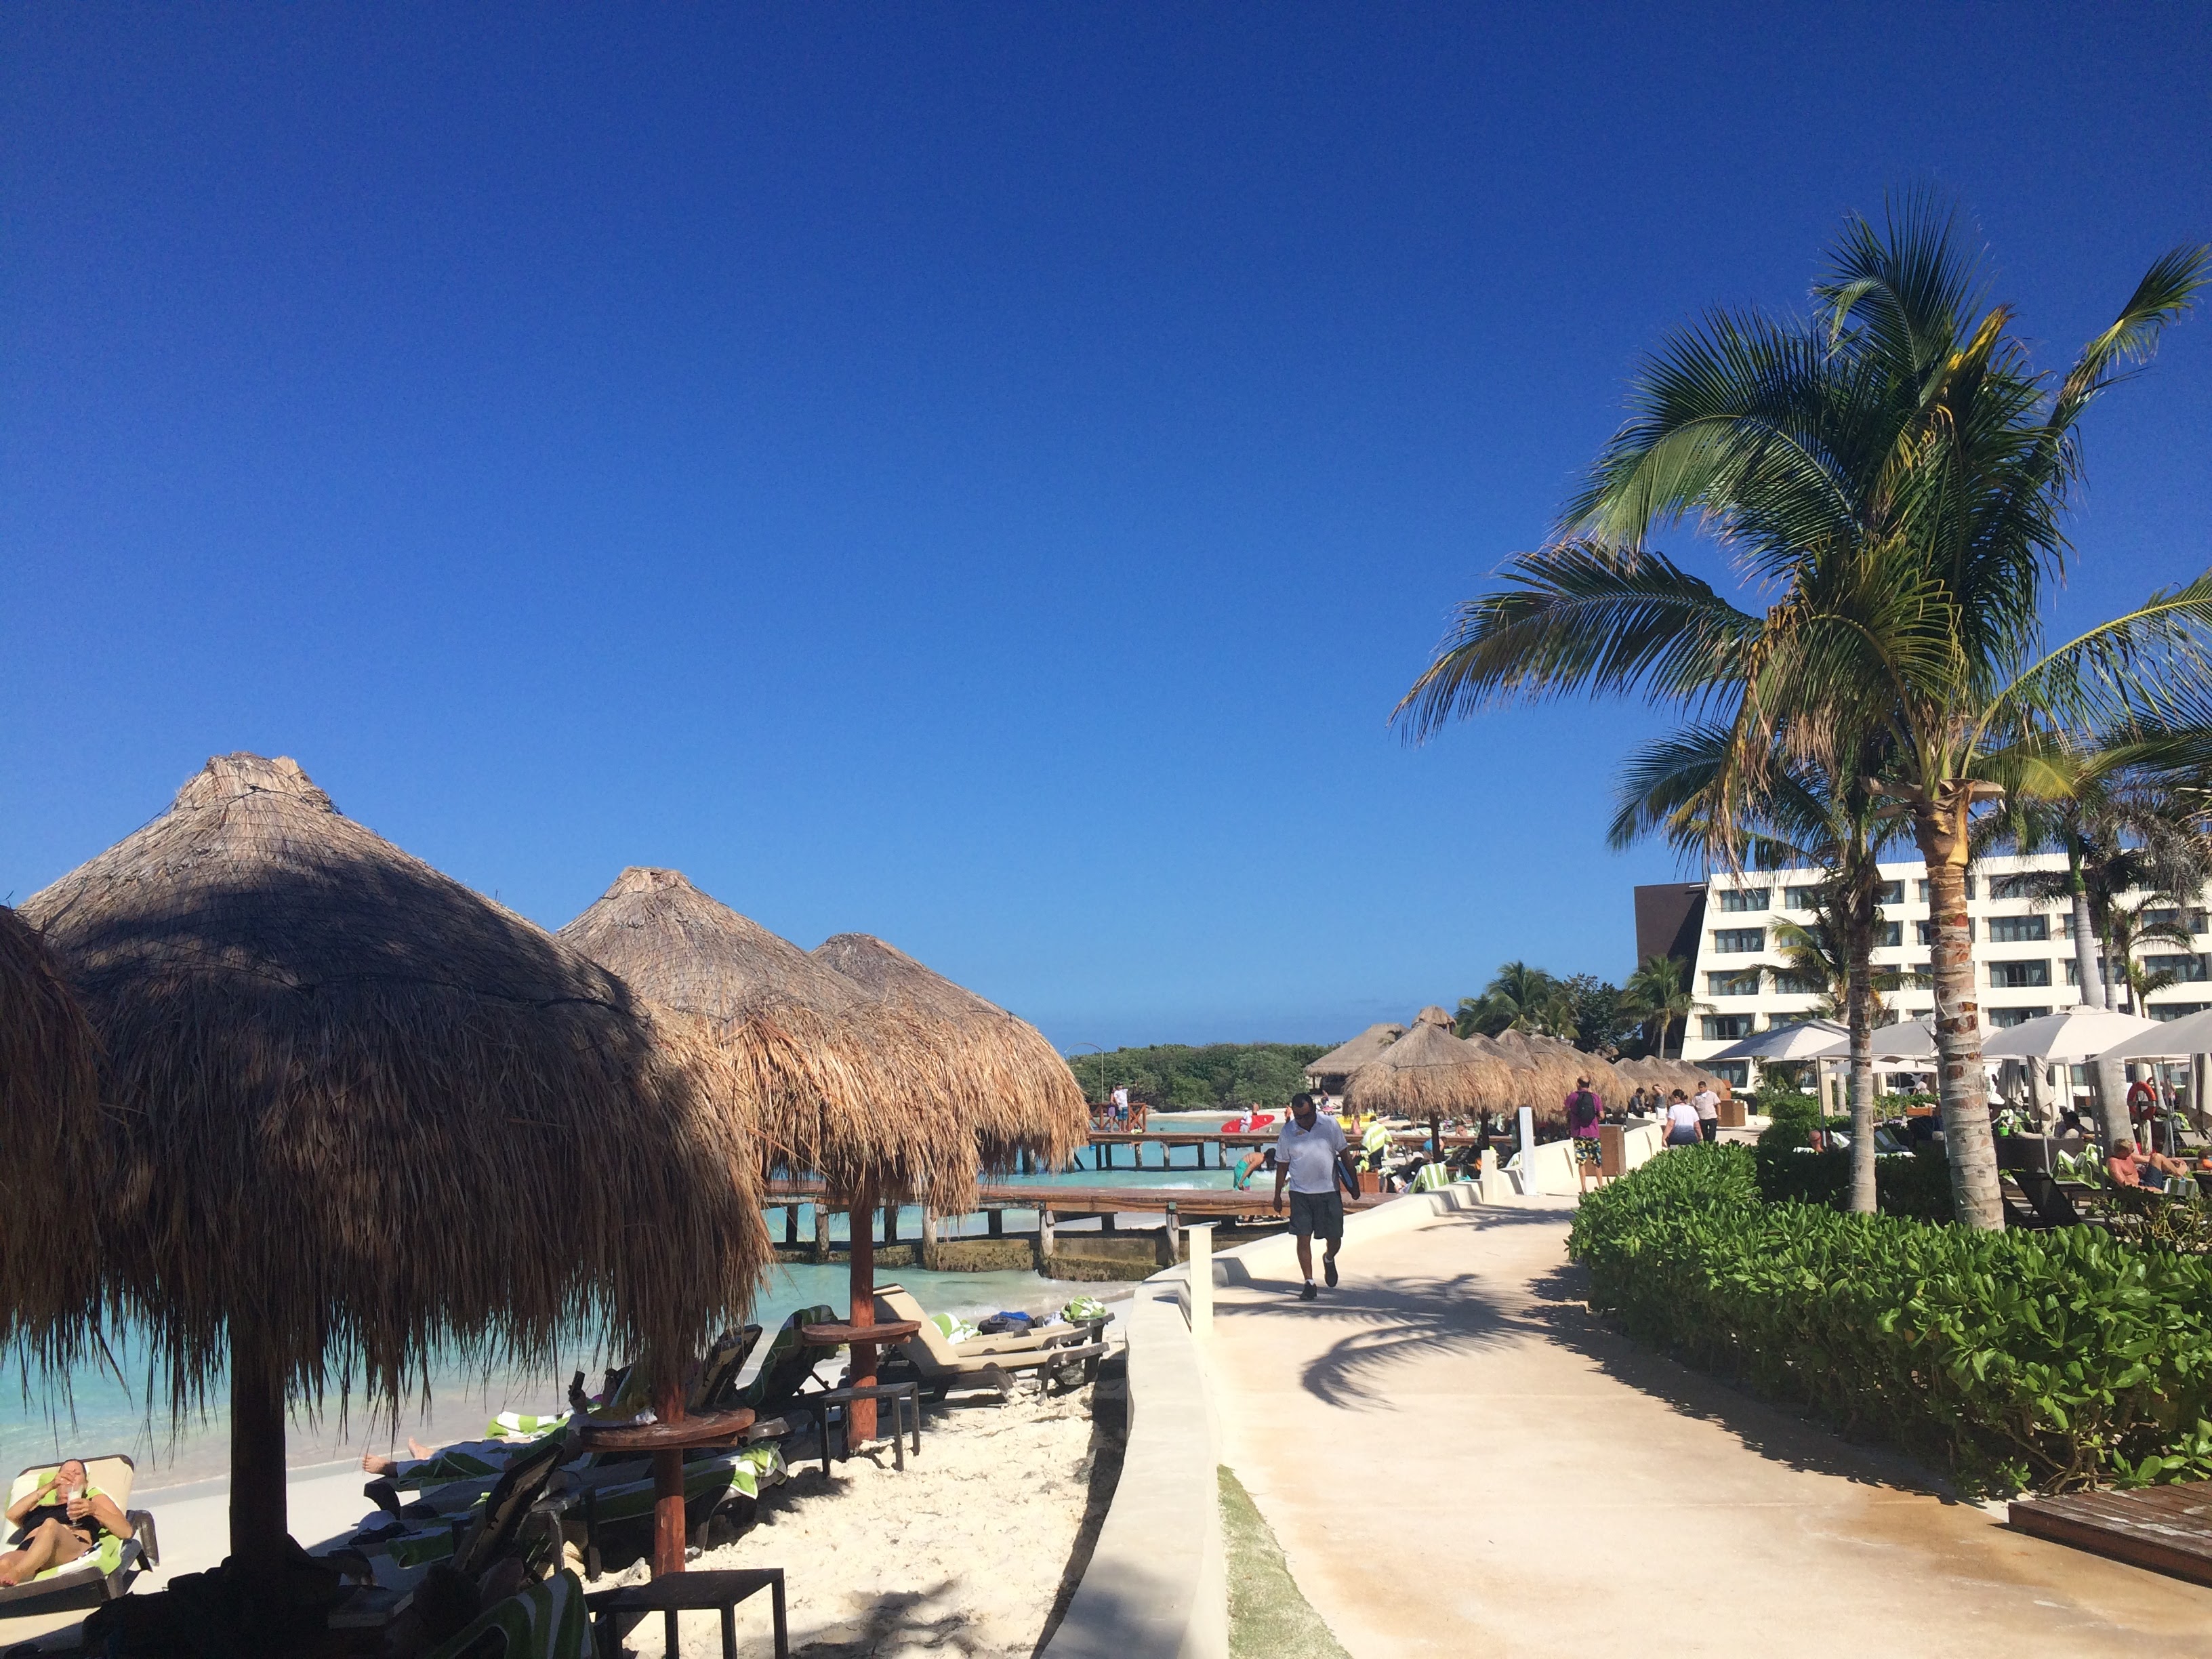 hyatt ziva cancun beach was private and beautiful